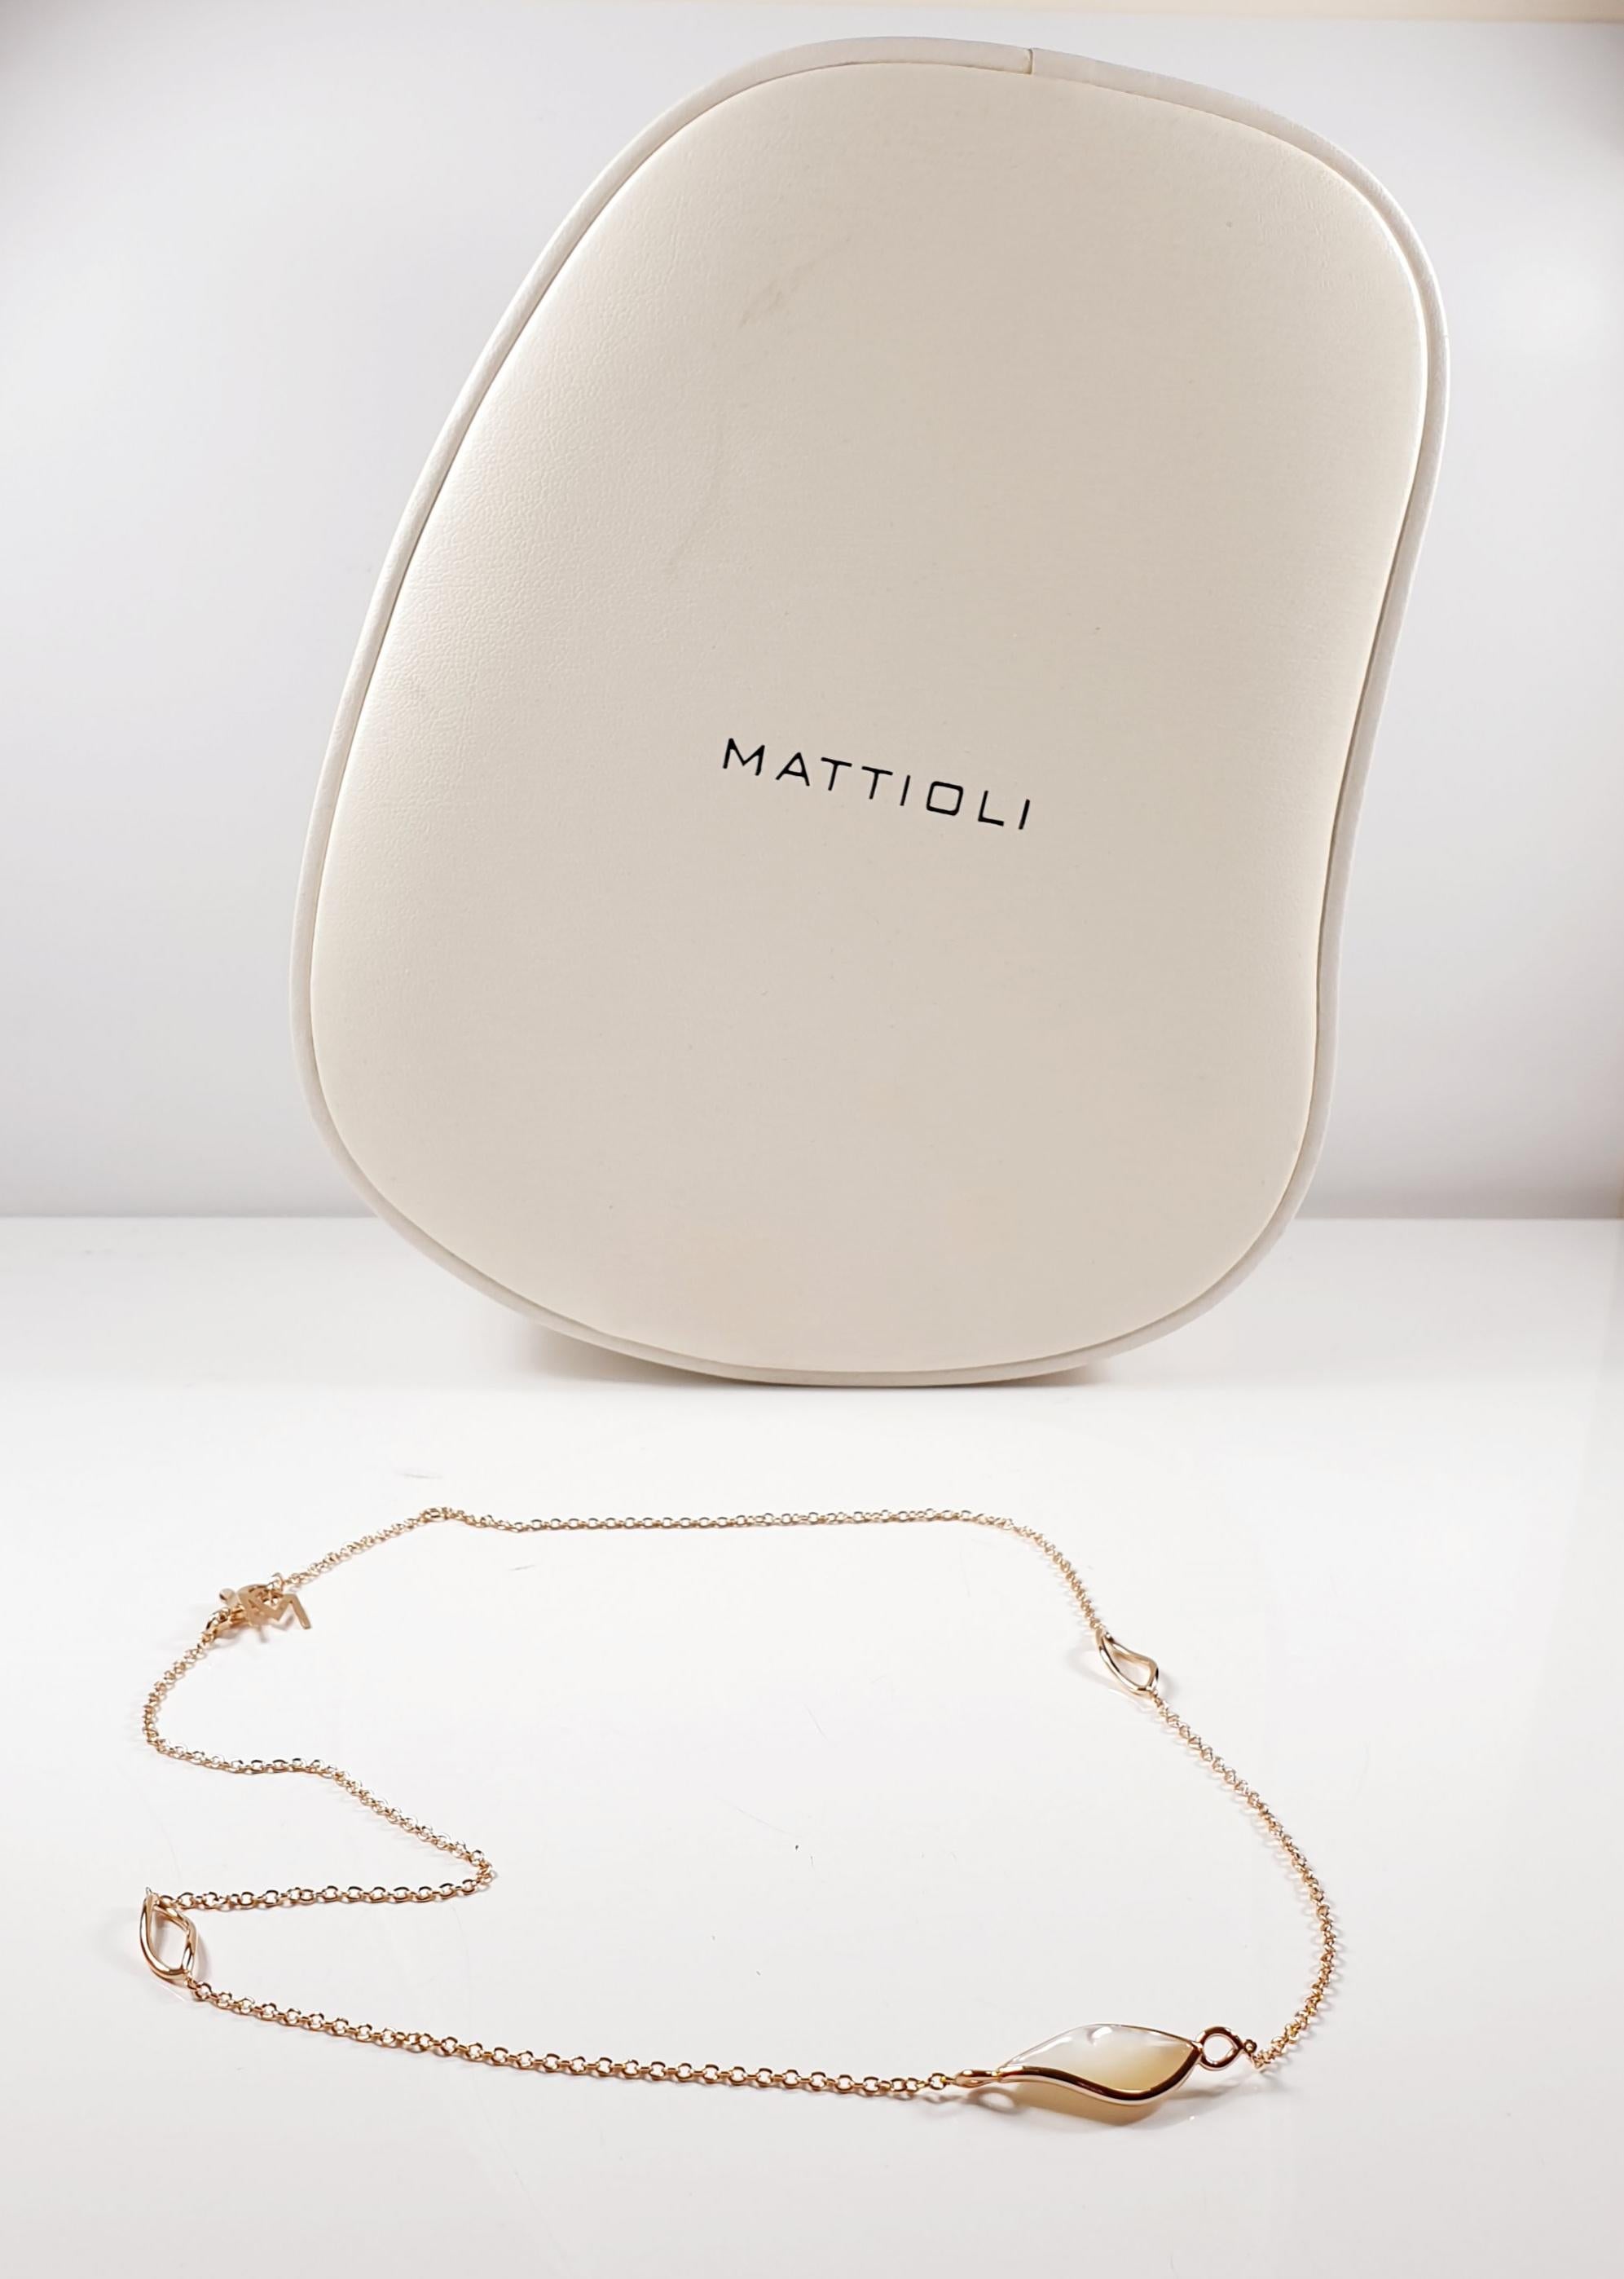 Mattioli Navettes Necklace In New Condition For Sale In Bilbao, ES